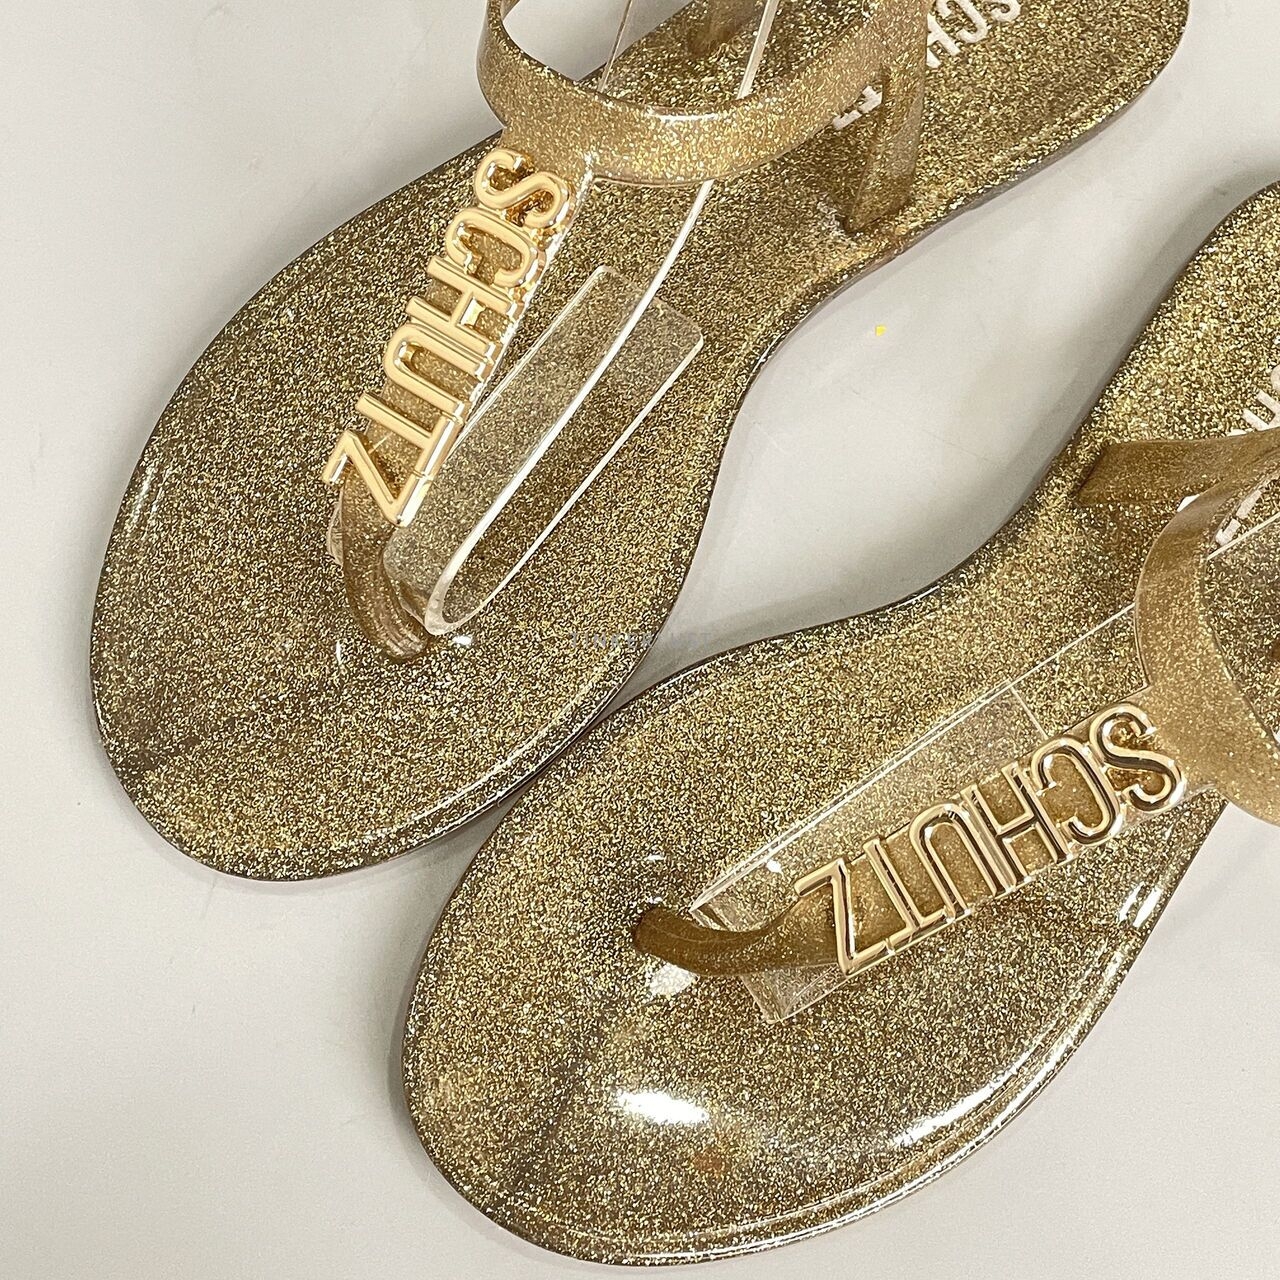 Schutz Gold Sandals